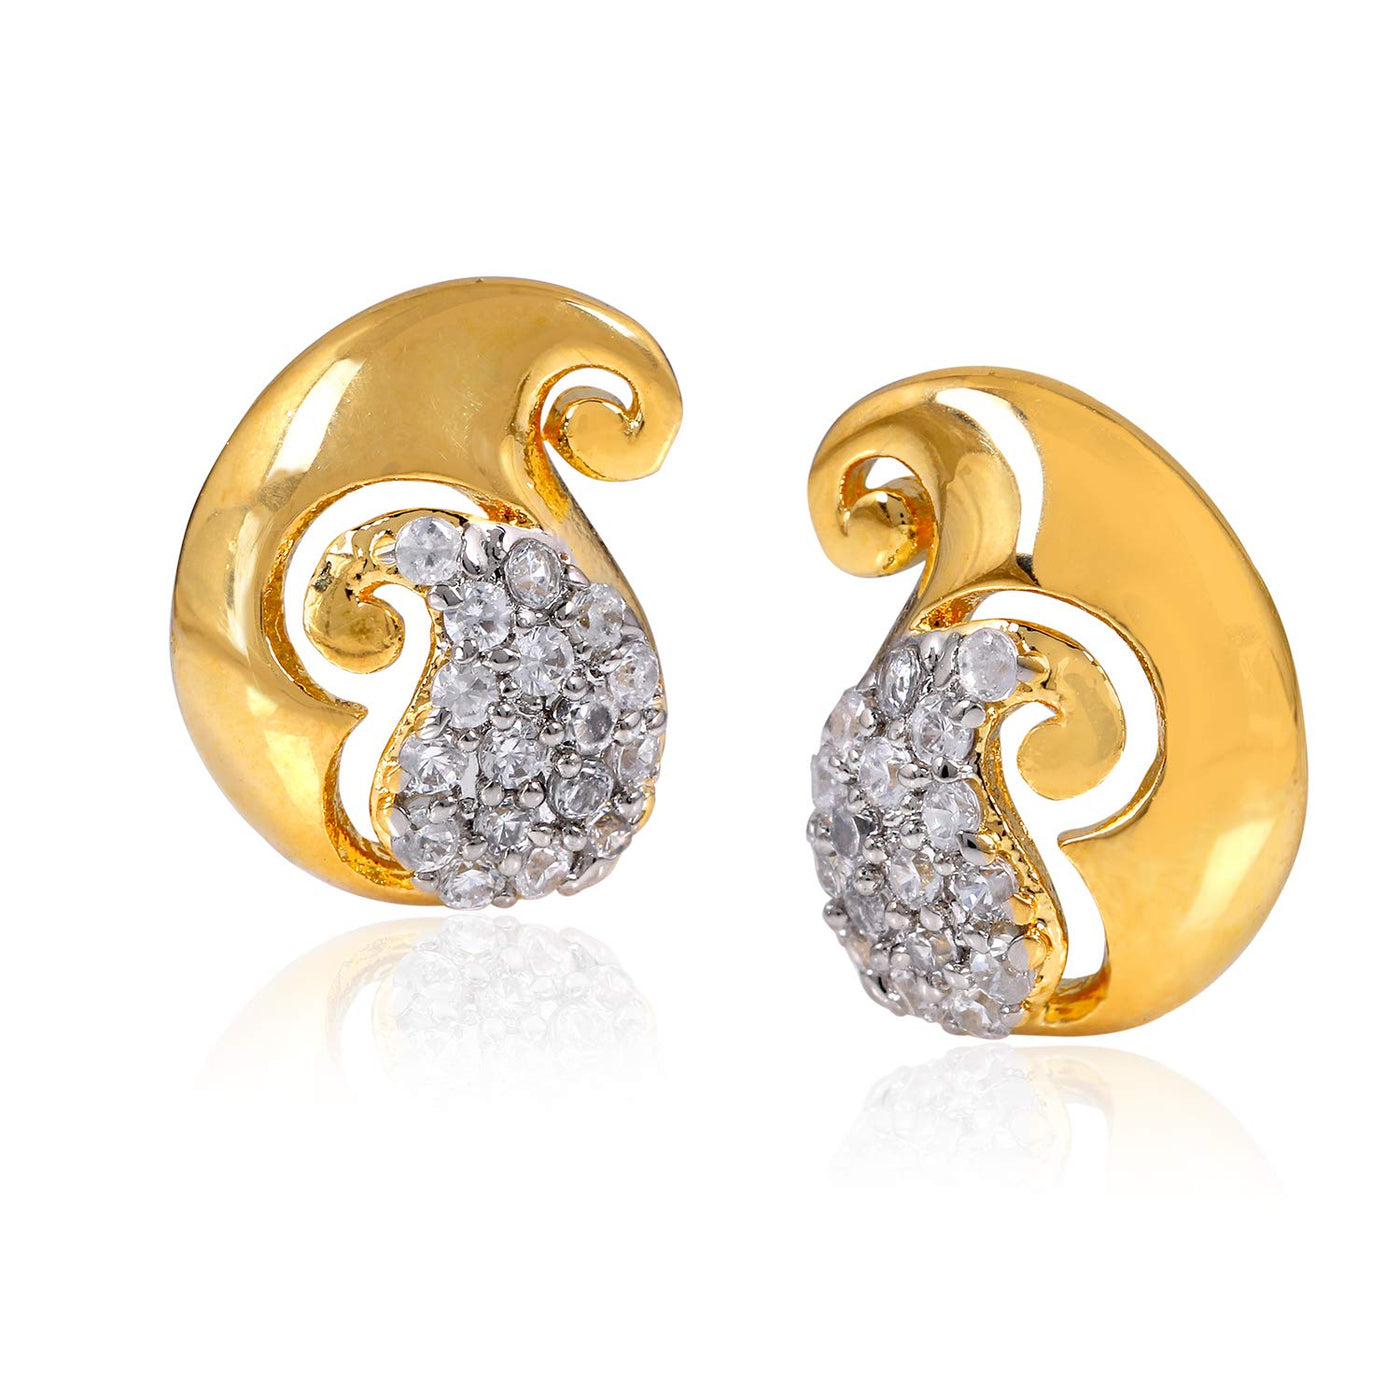 Estele Floral Gold Plated Stylish Fancy Party Wear Stud Earrings For Women & Girls